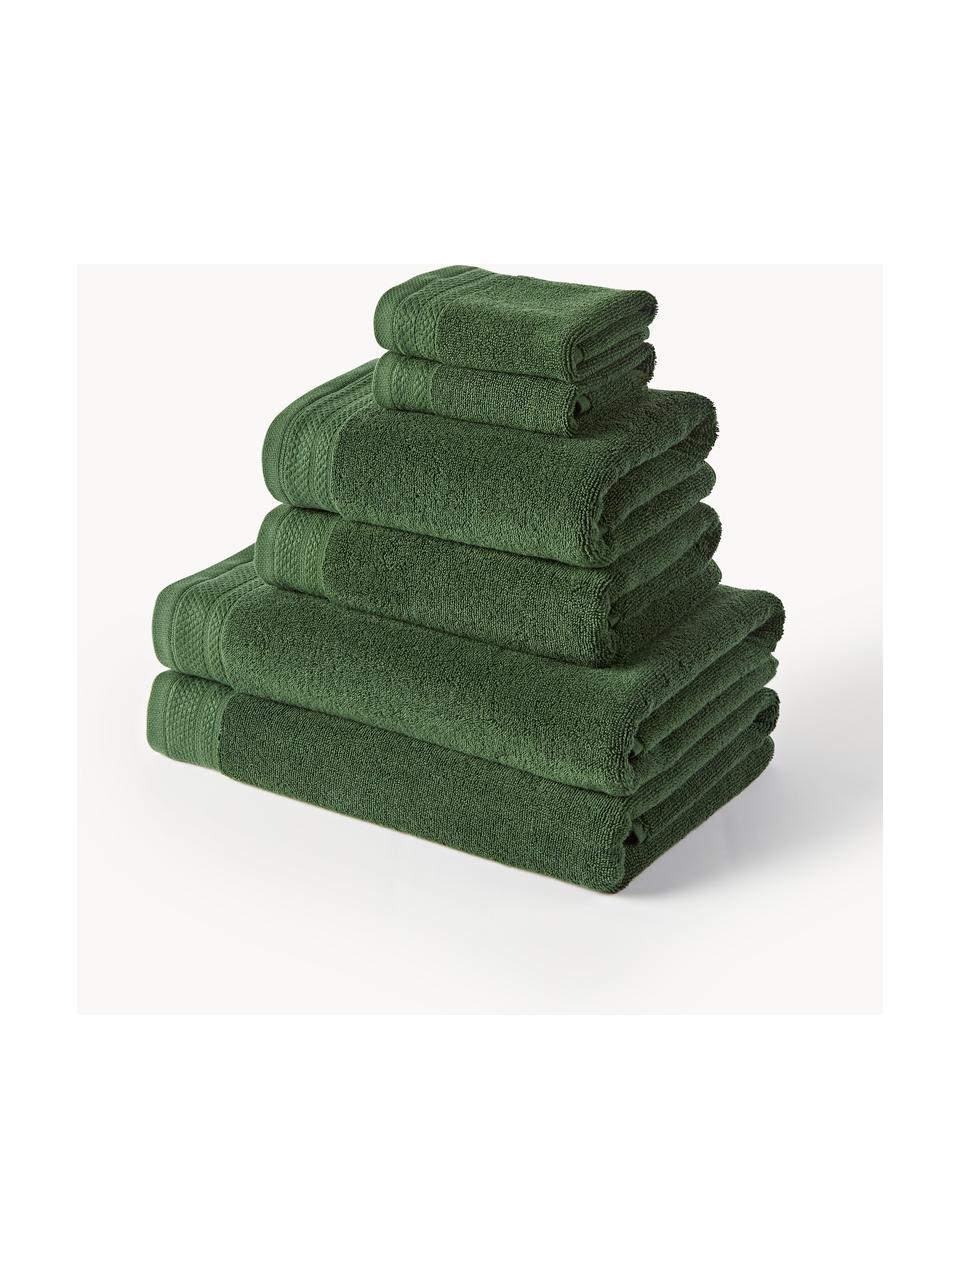 Set de toallas de algodón ecológico Premium, tamaños diferentes, 100% algodón ecológico con certificado GOTS (por GCL International, GCL-300517)
Gramaje superior 600 g/m², Verde oscuro, Set de 6 (toalla tocador, toalla lavabo y toalla ducha)